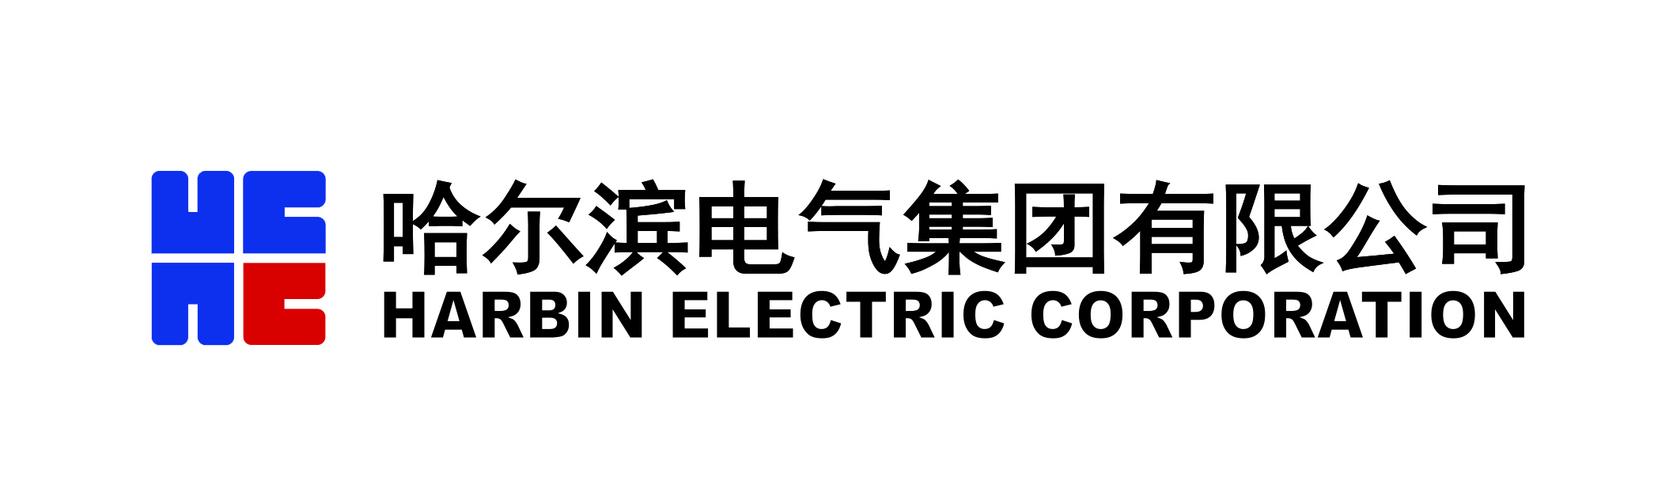 哈尔滨电气(01133.HK)：哈电集团公司将哈电工程研究中心25%股权转让给公司